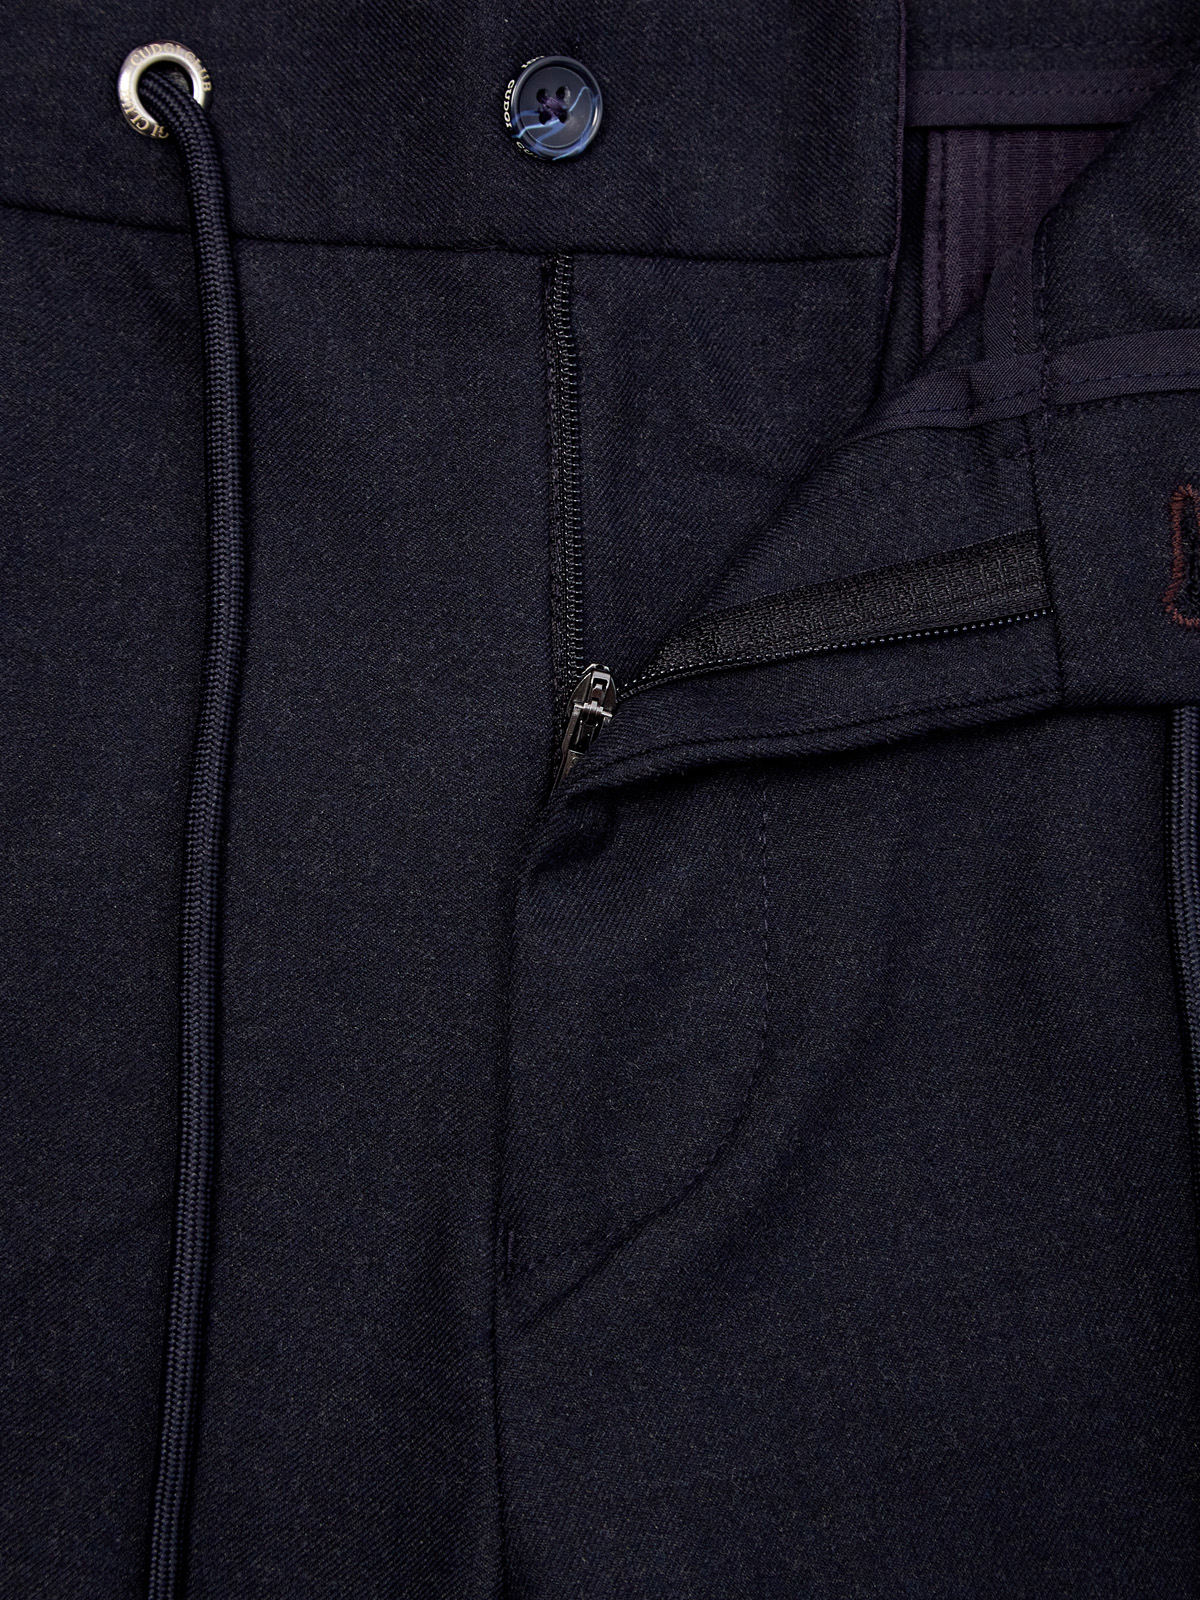 Шерстяные брюки с поясом на кулиске и вышитым логотипом CUDGI, цвет синий, размер 50;54;58;60;62 - фото 6